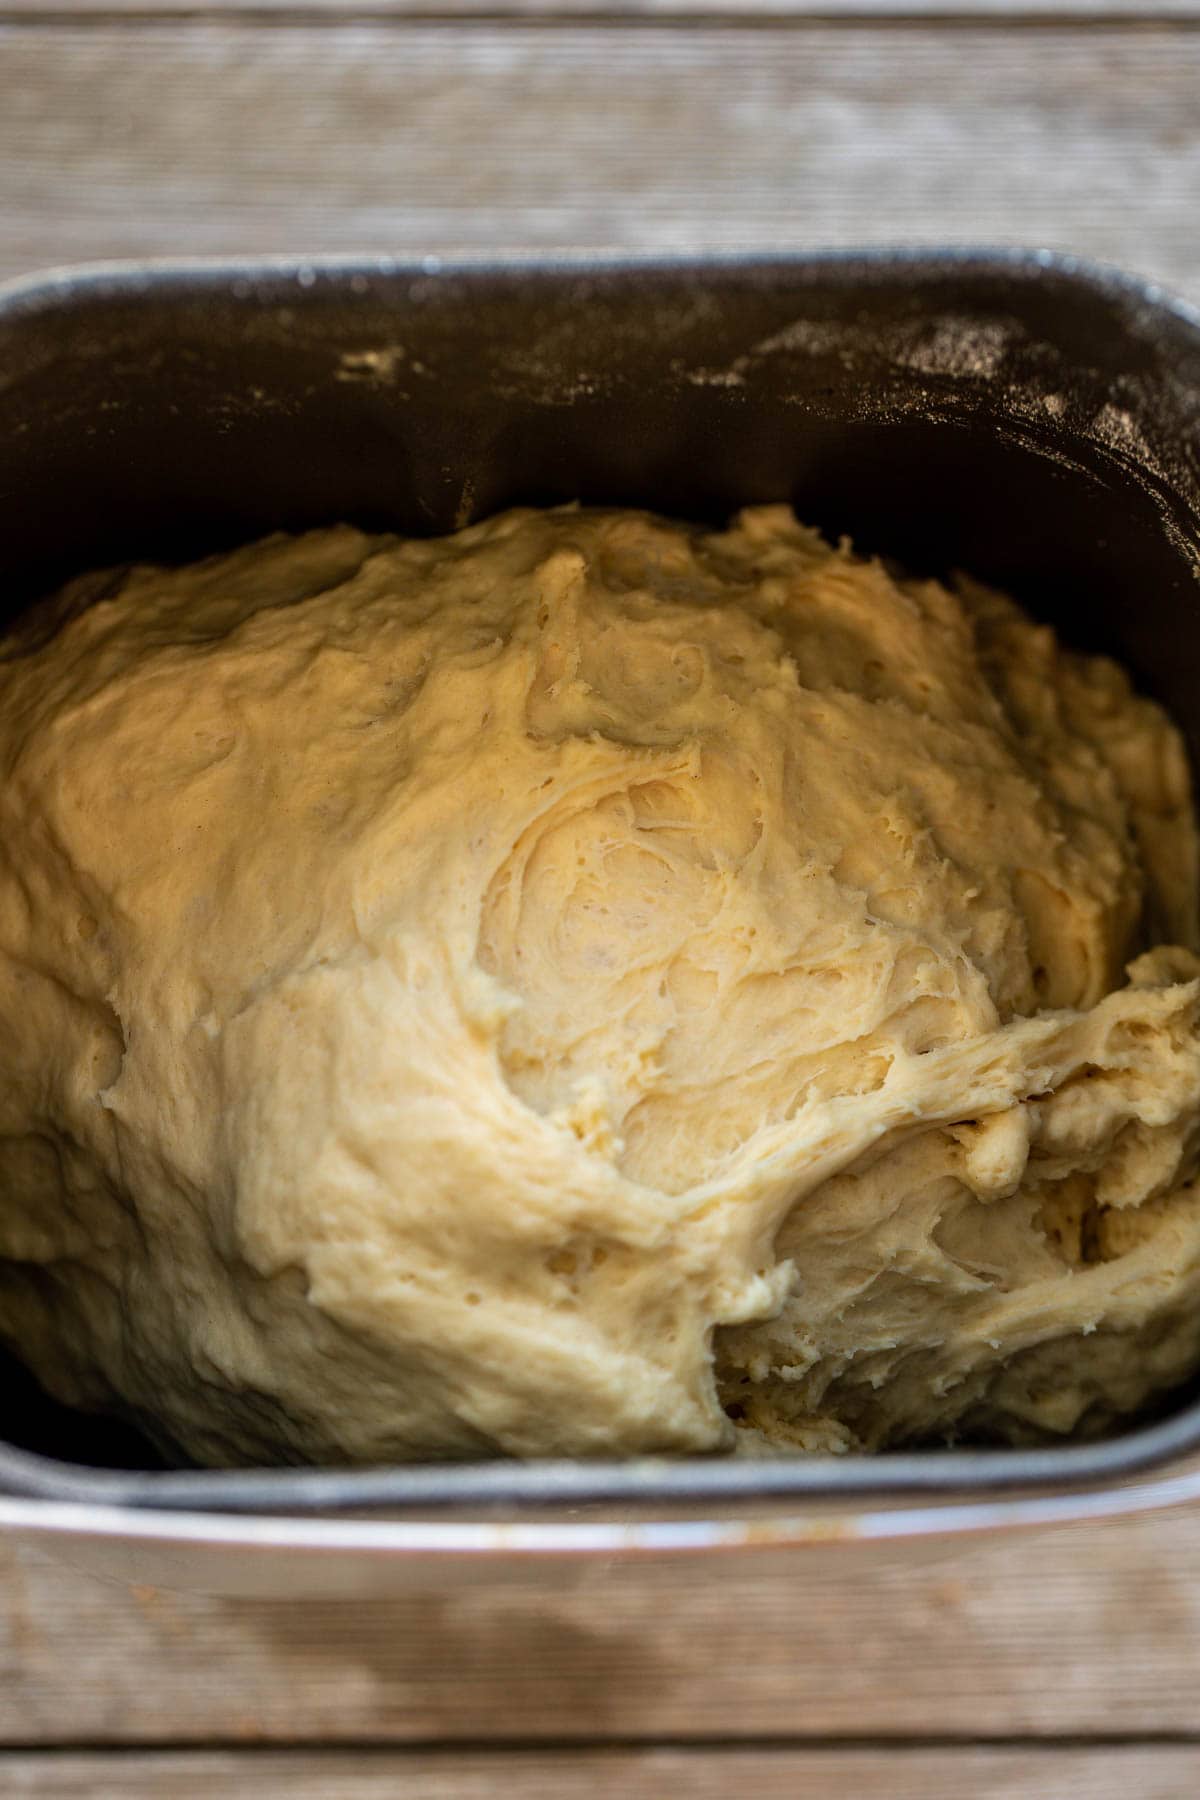 sweet rolls dough in bowl